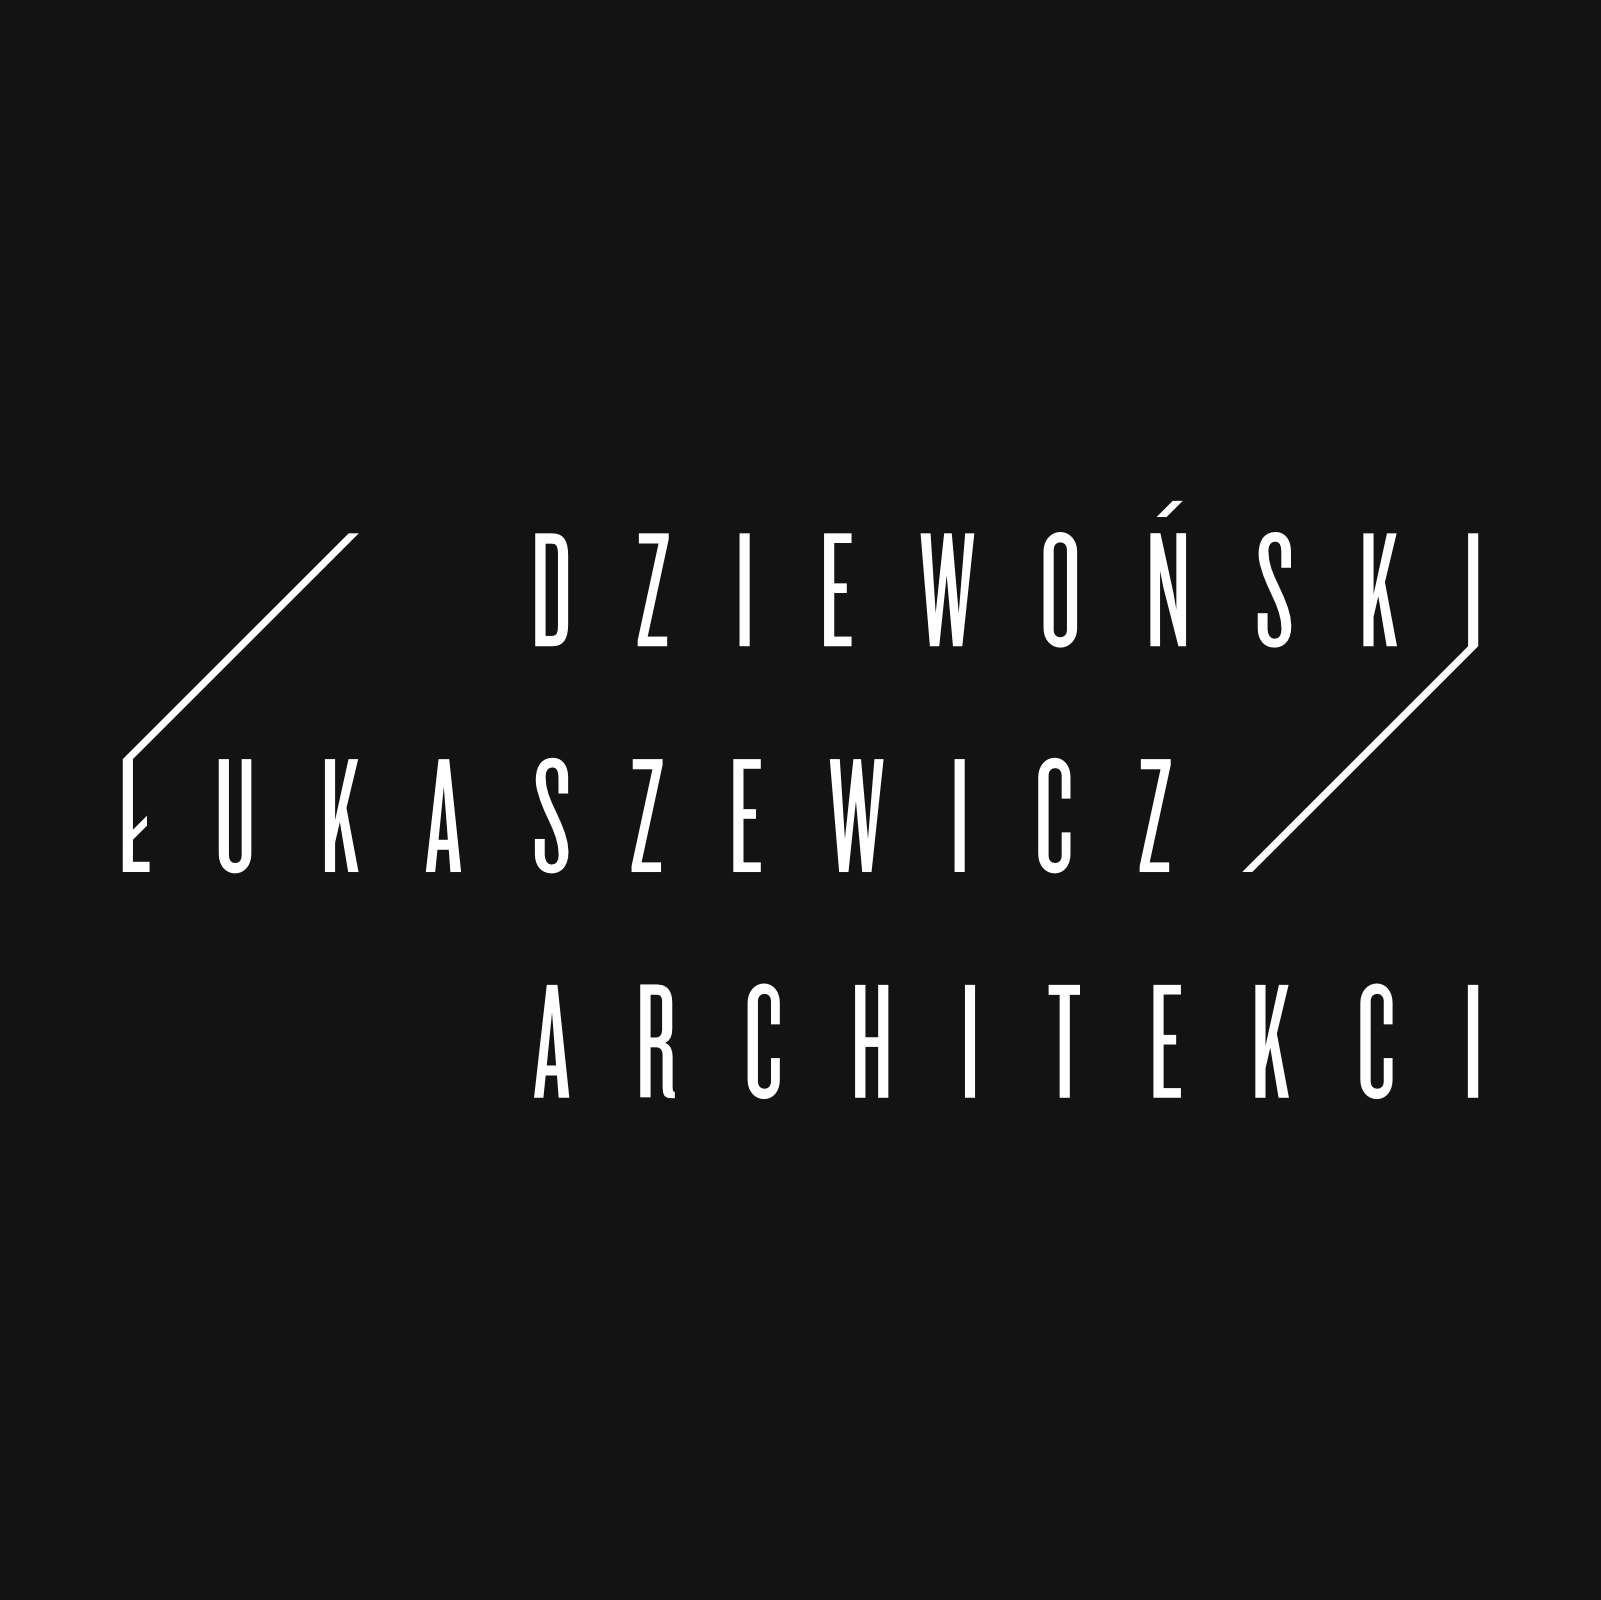 Dziewoński, Łukaszewicz - architekci